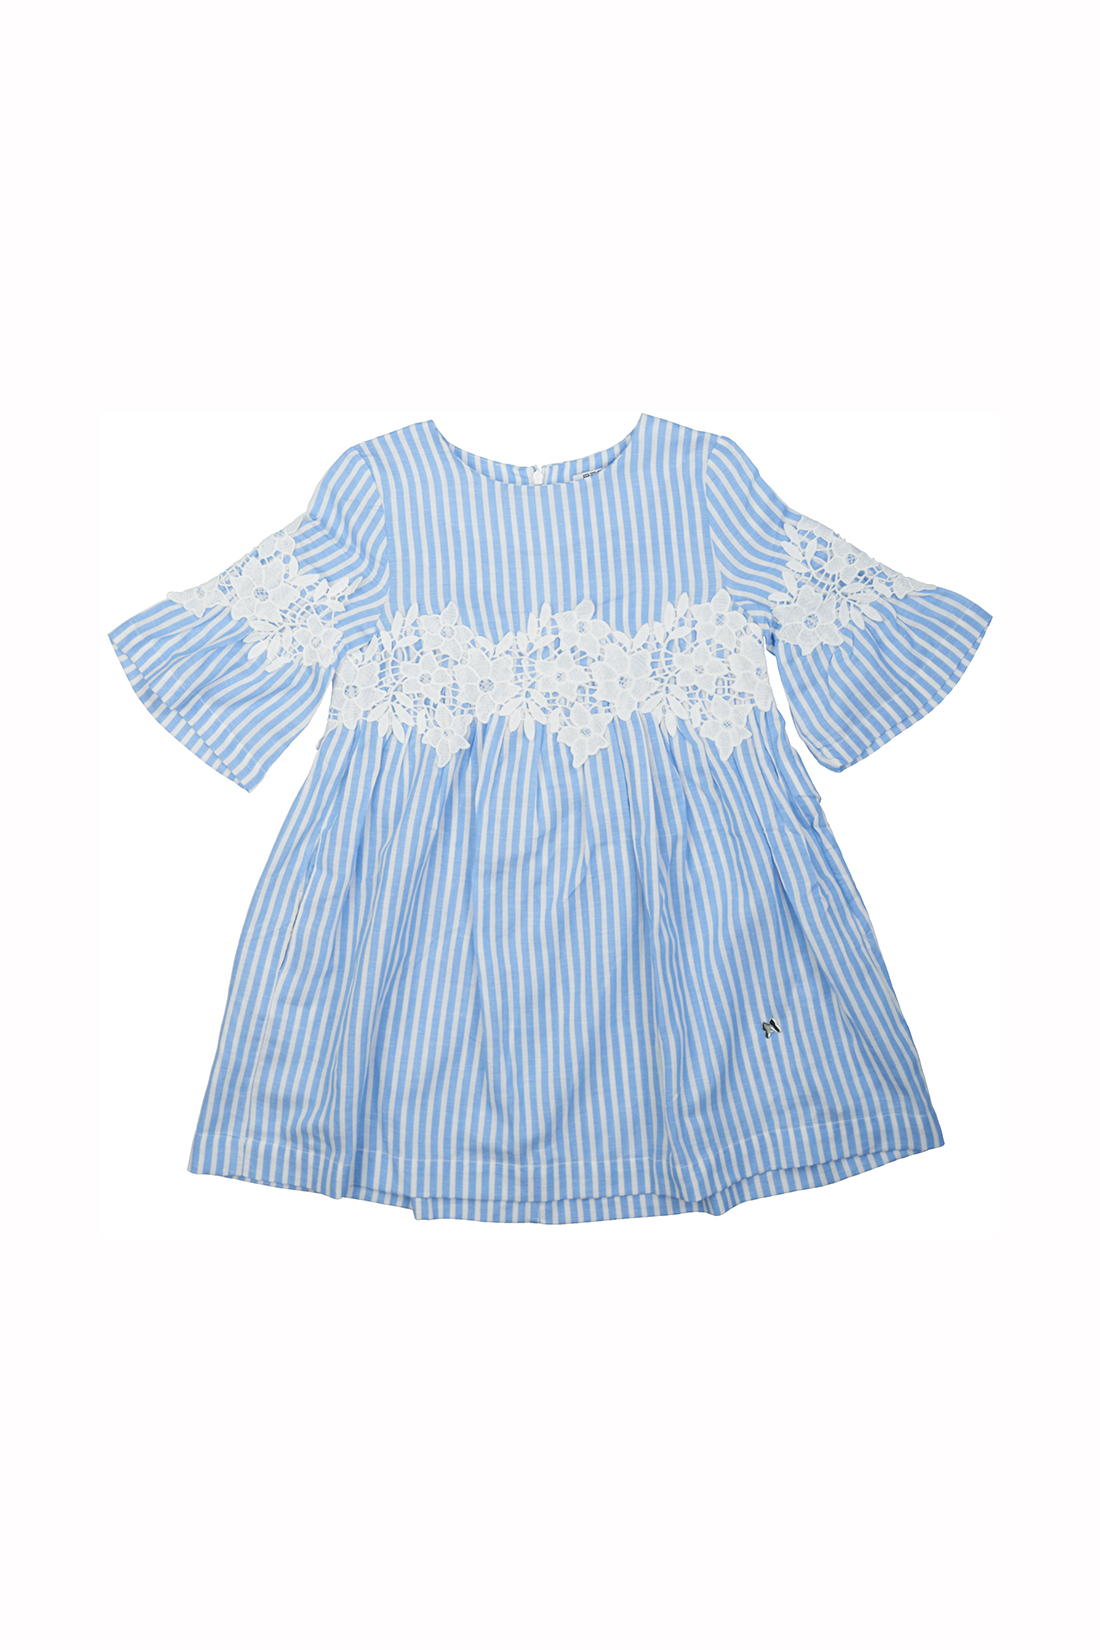 Платье для девочки (арт. baon BK459008), размер 98-104, цвет синий Платье для девочки (арт. baon BK459008) - фото 4